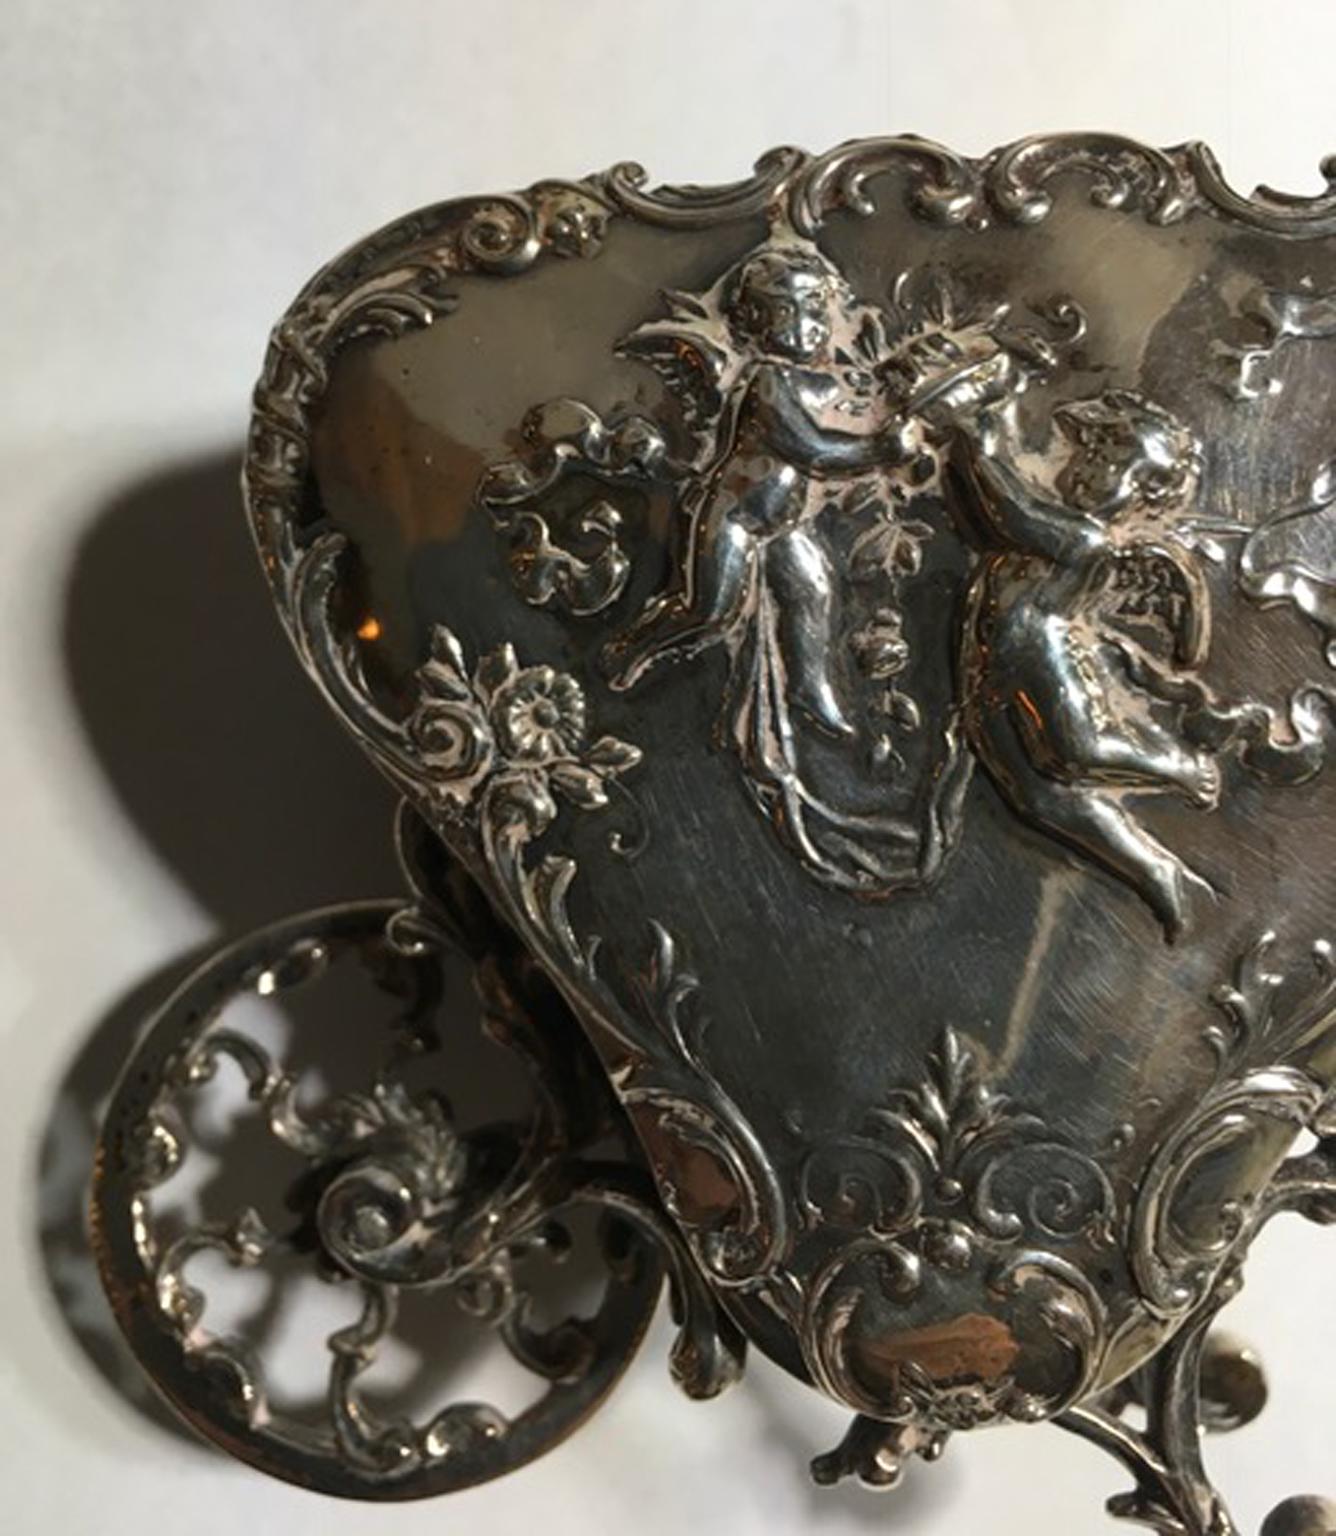 Petit chariot d'amour baroque ancien en argent sterling  Fin du XIXe siècle, Italie.

C'est une très belle et adorable pièce de joaillerie d'art. Entièrement fait à la main. La surface est finement sculptée d'un décor floral et de petits